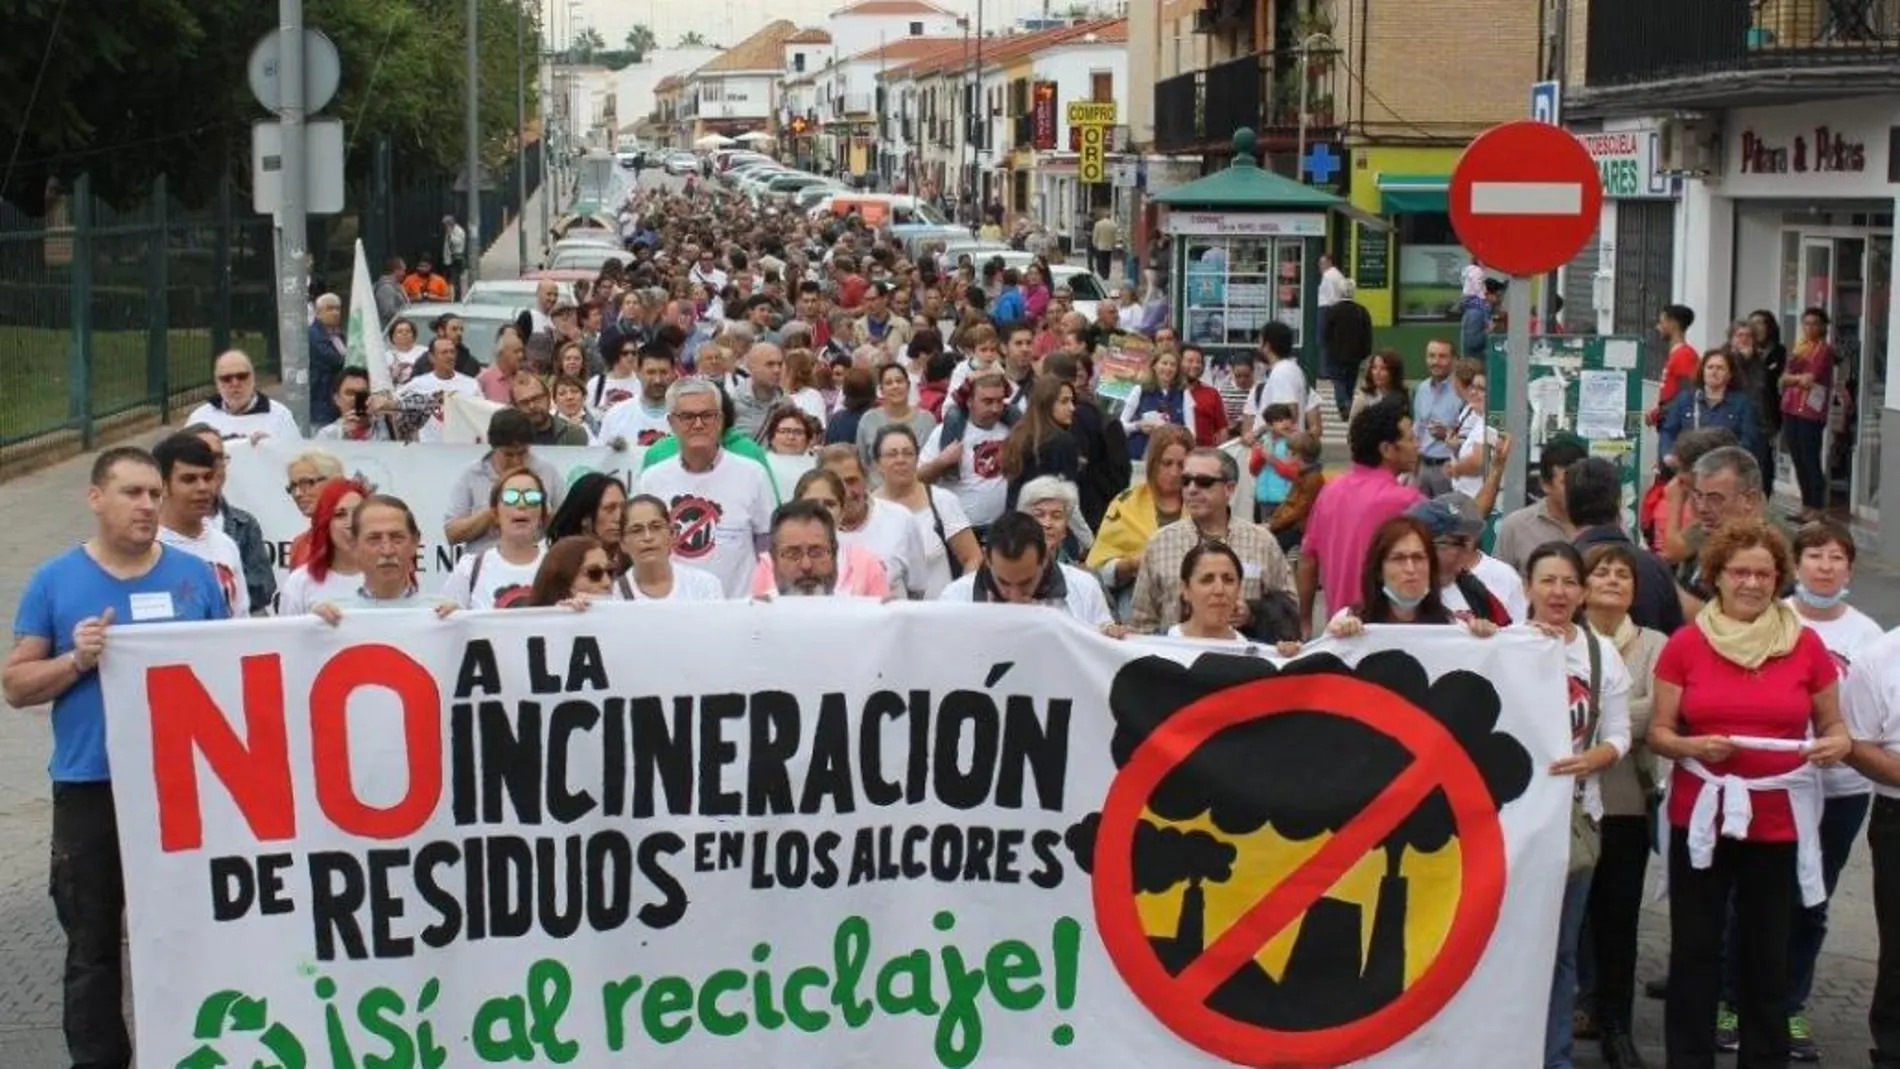 Imagen de una de las protestas ciudadanas contra la incineración de residuos que se han repetido desde hace años en la zona